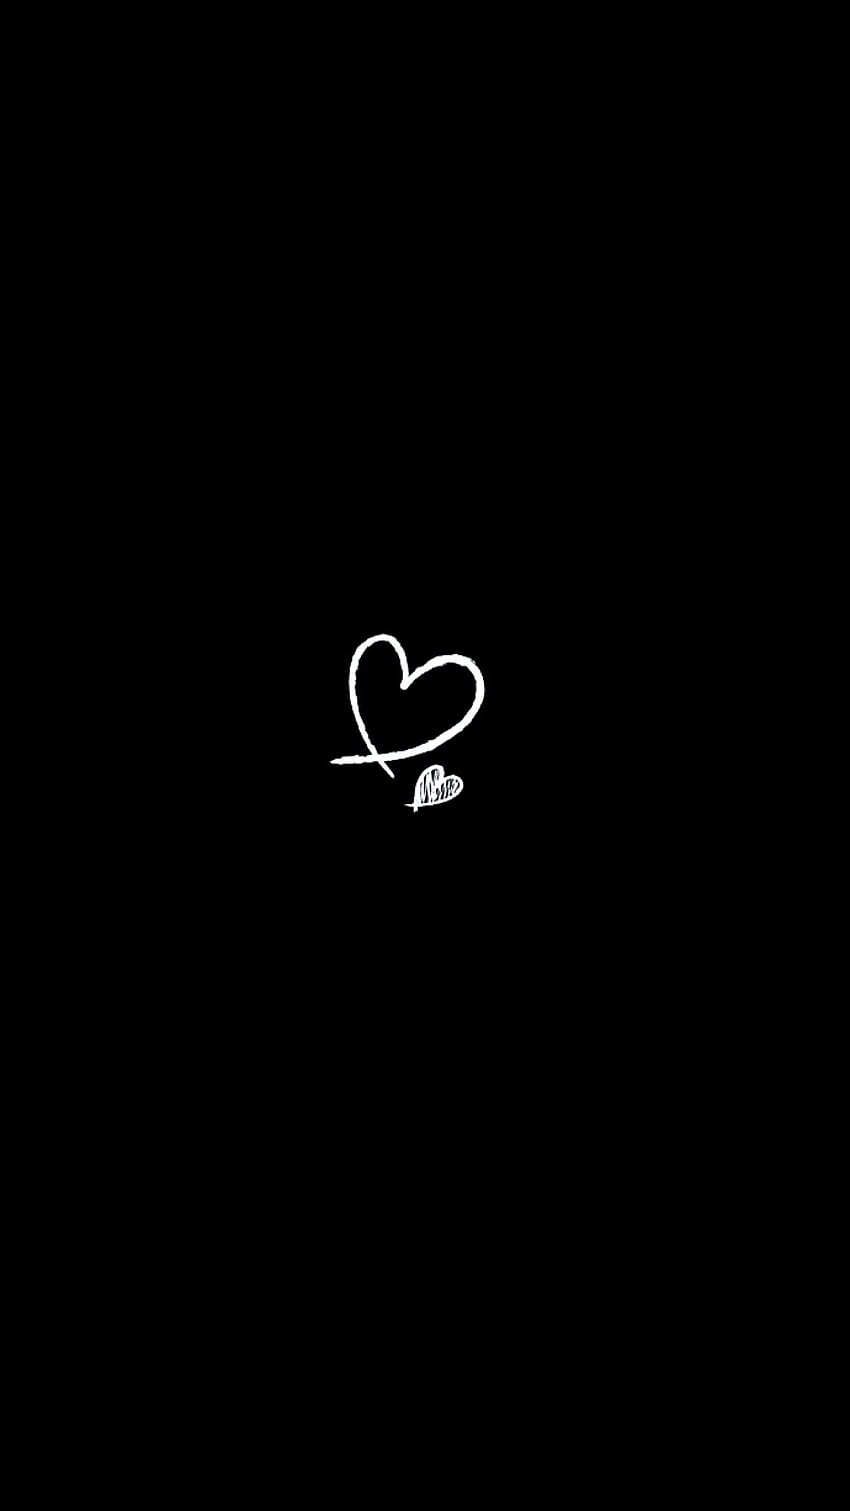 iPhone de madera. Siyah duvar, corazón blanco y negro fondo de pantalla del teléfono